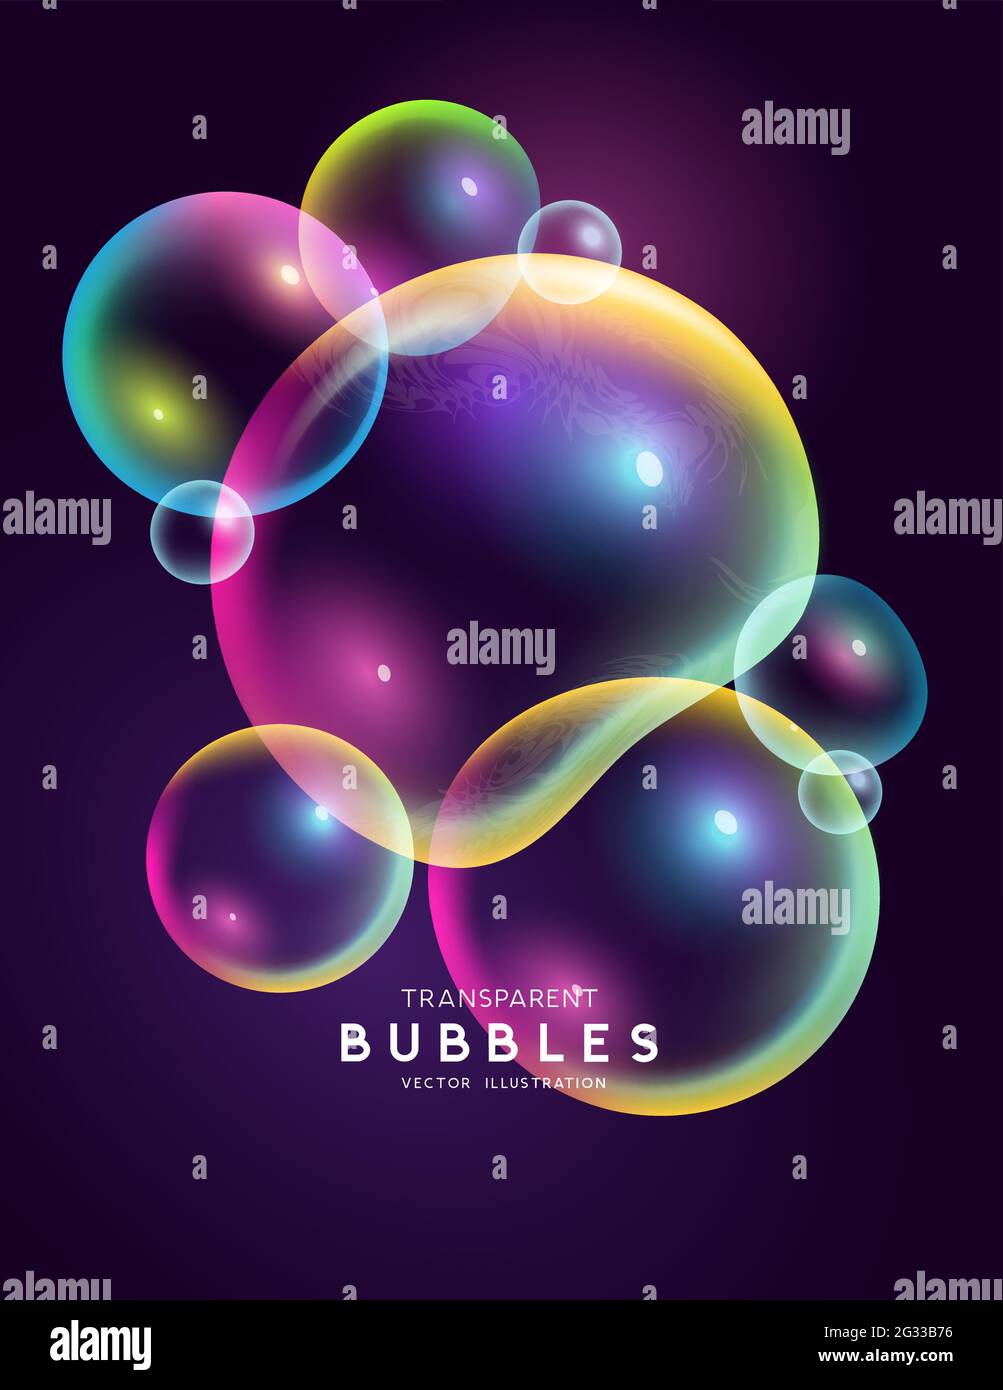 Ensemble isolé de bulles transparentes flottantes colorées en arc-en-ciel. Illustration du vecteur abstrait. Illustration de Vecteur